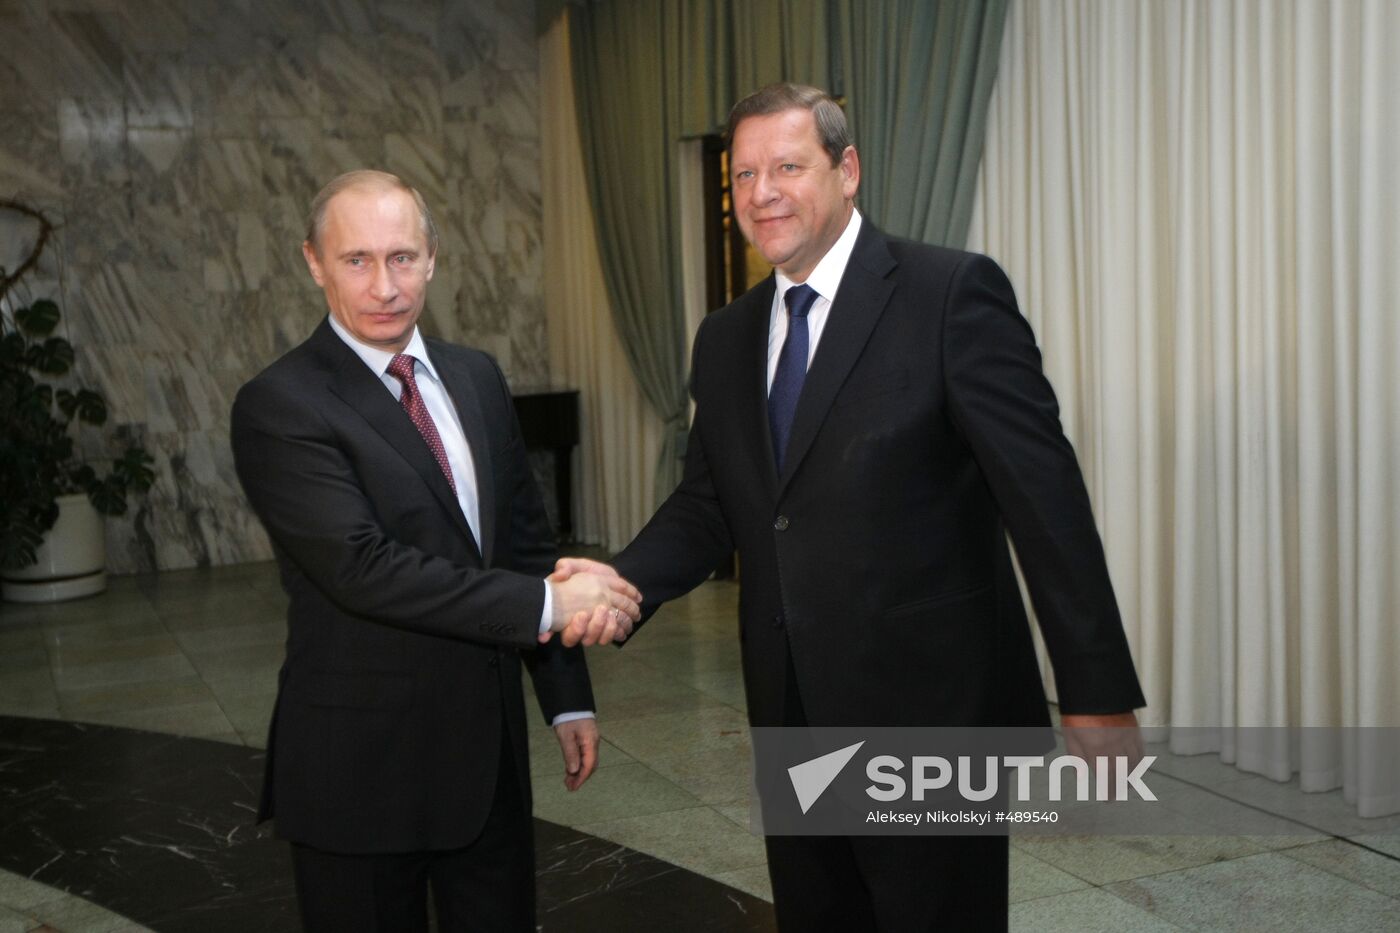 Russian, Belarusian PMs meet for talks